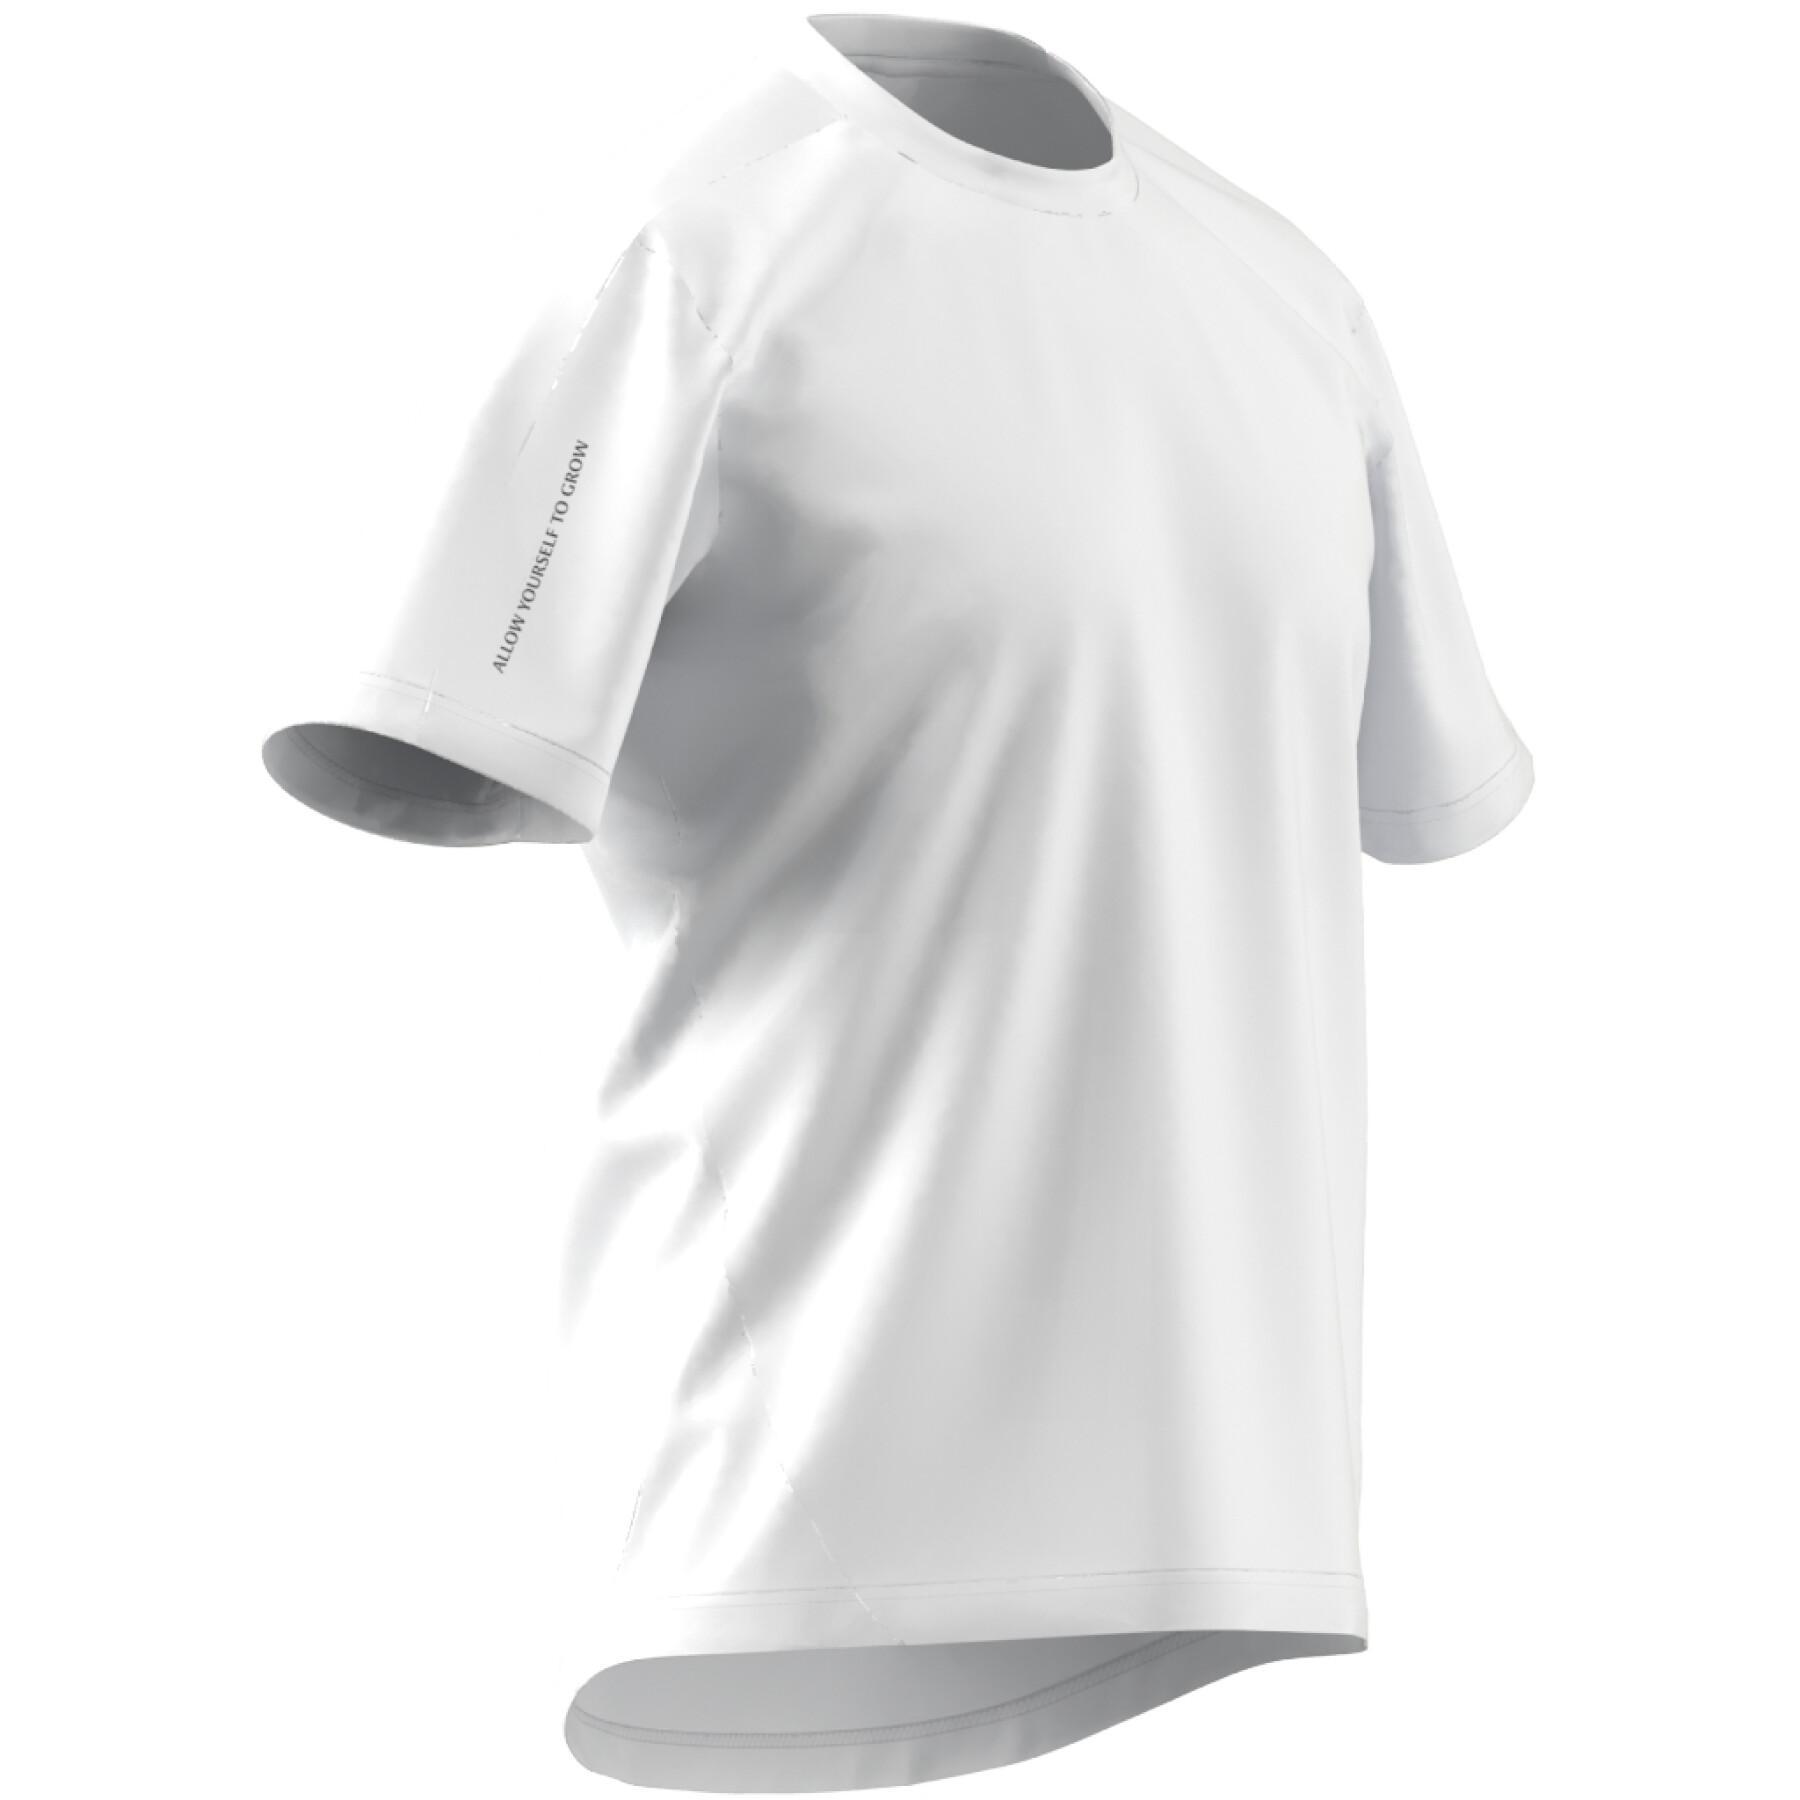 Basis T-shirt adidas